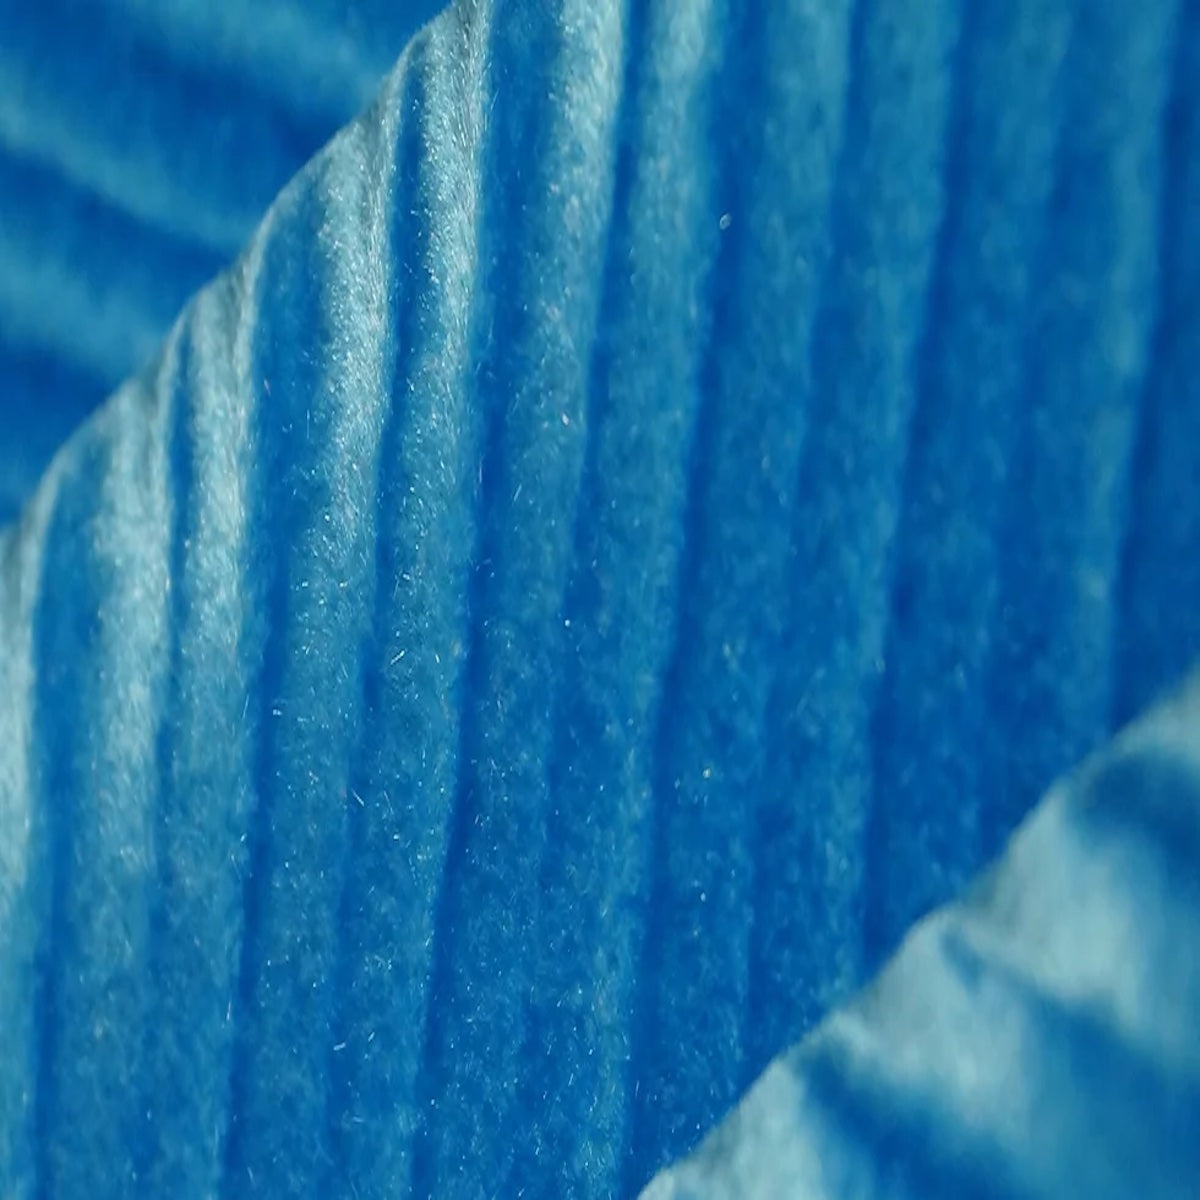 Turquoise Blue Swirl Velvet Flocking Fabric - Fashion Fabrics LLC